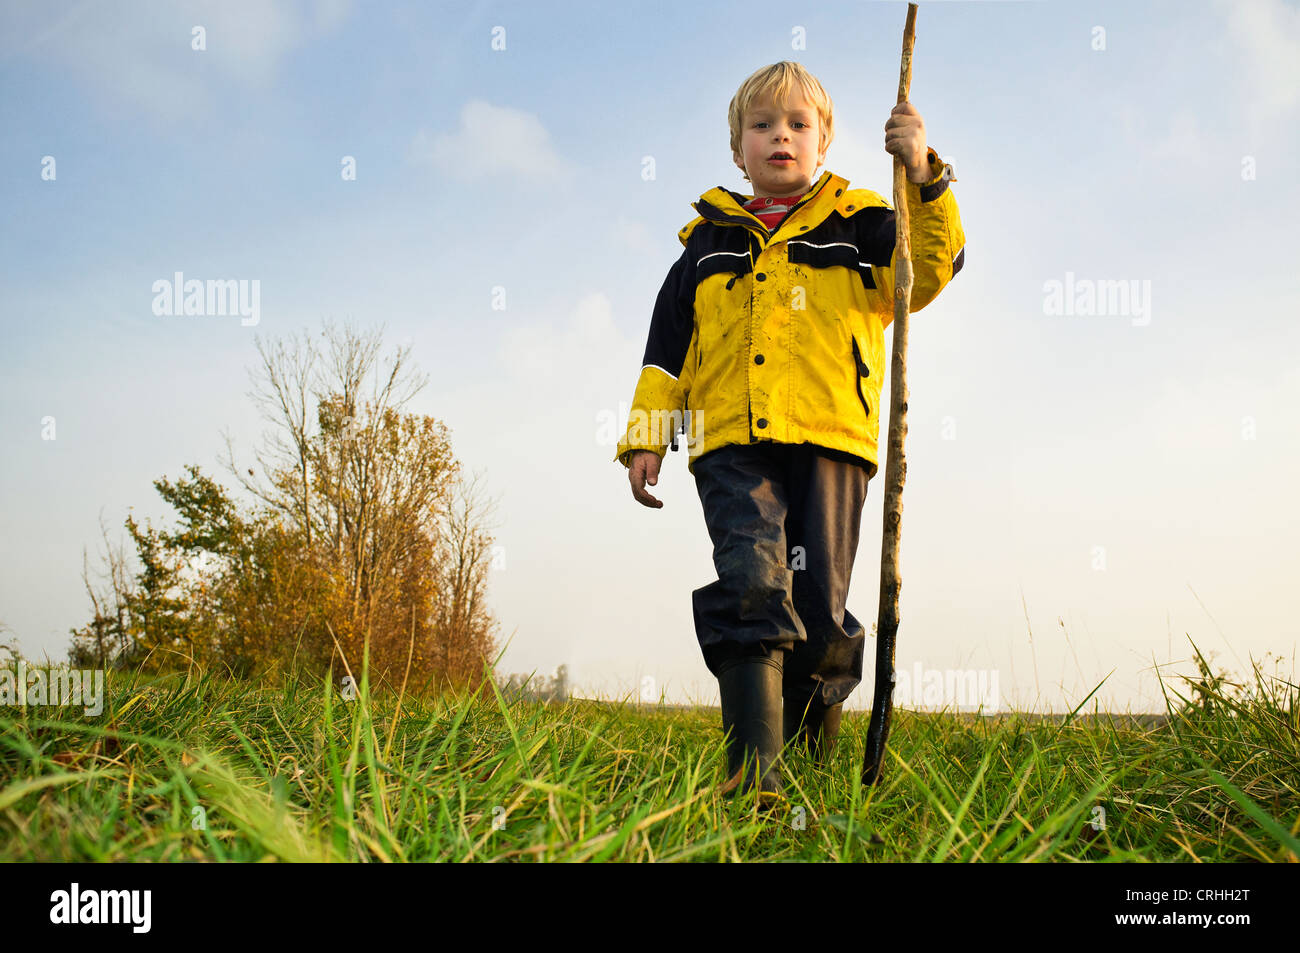 Jeune enfant, portant un manteau de pluie jaune et bottes, posant dans un paysage rural avec un bâton Banque D'Images